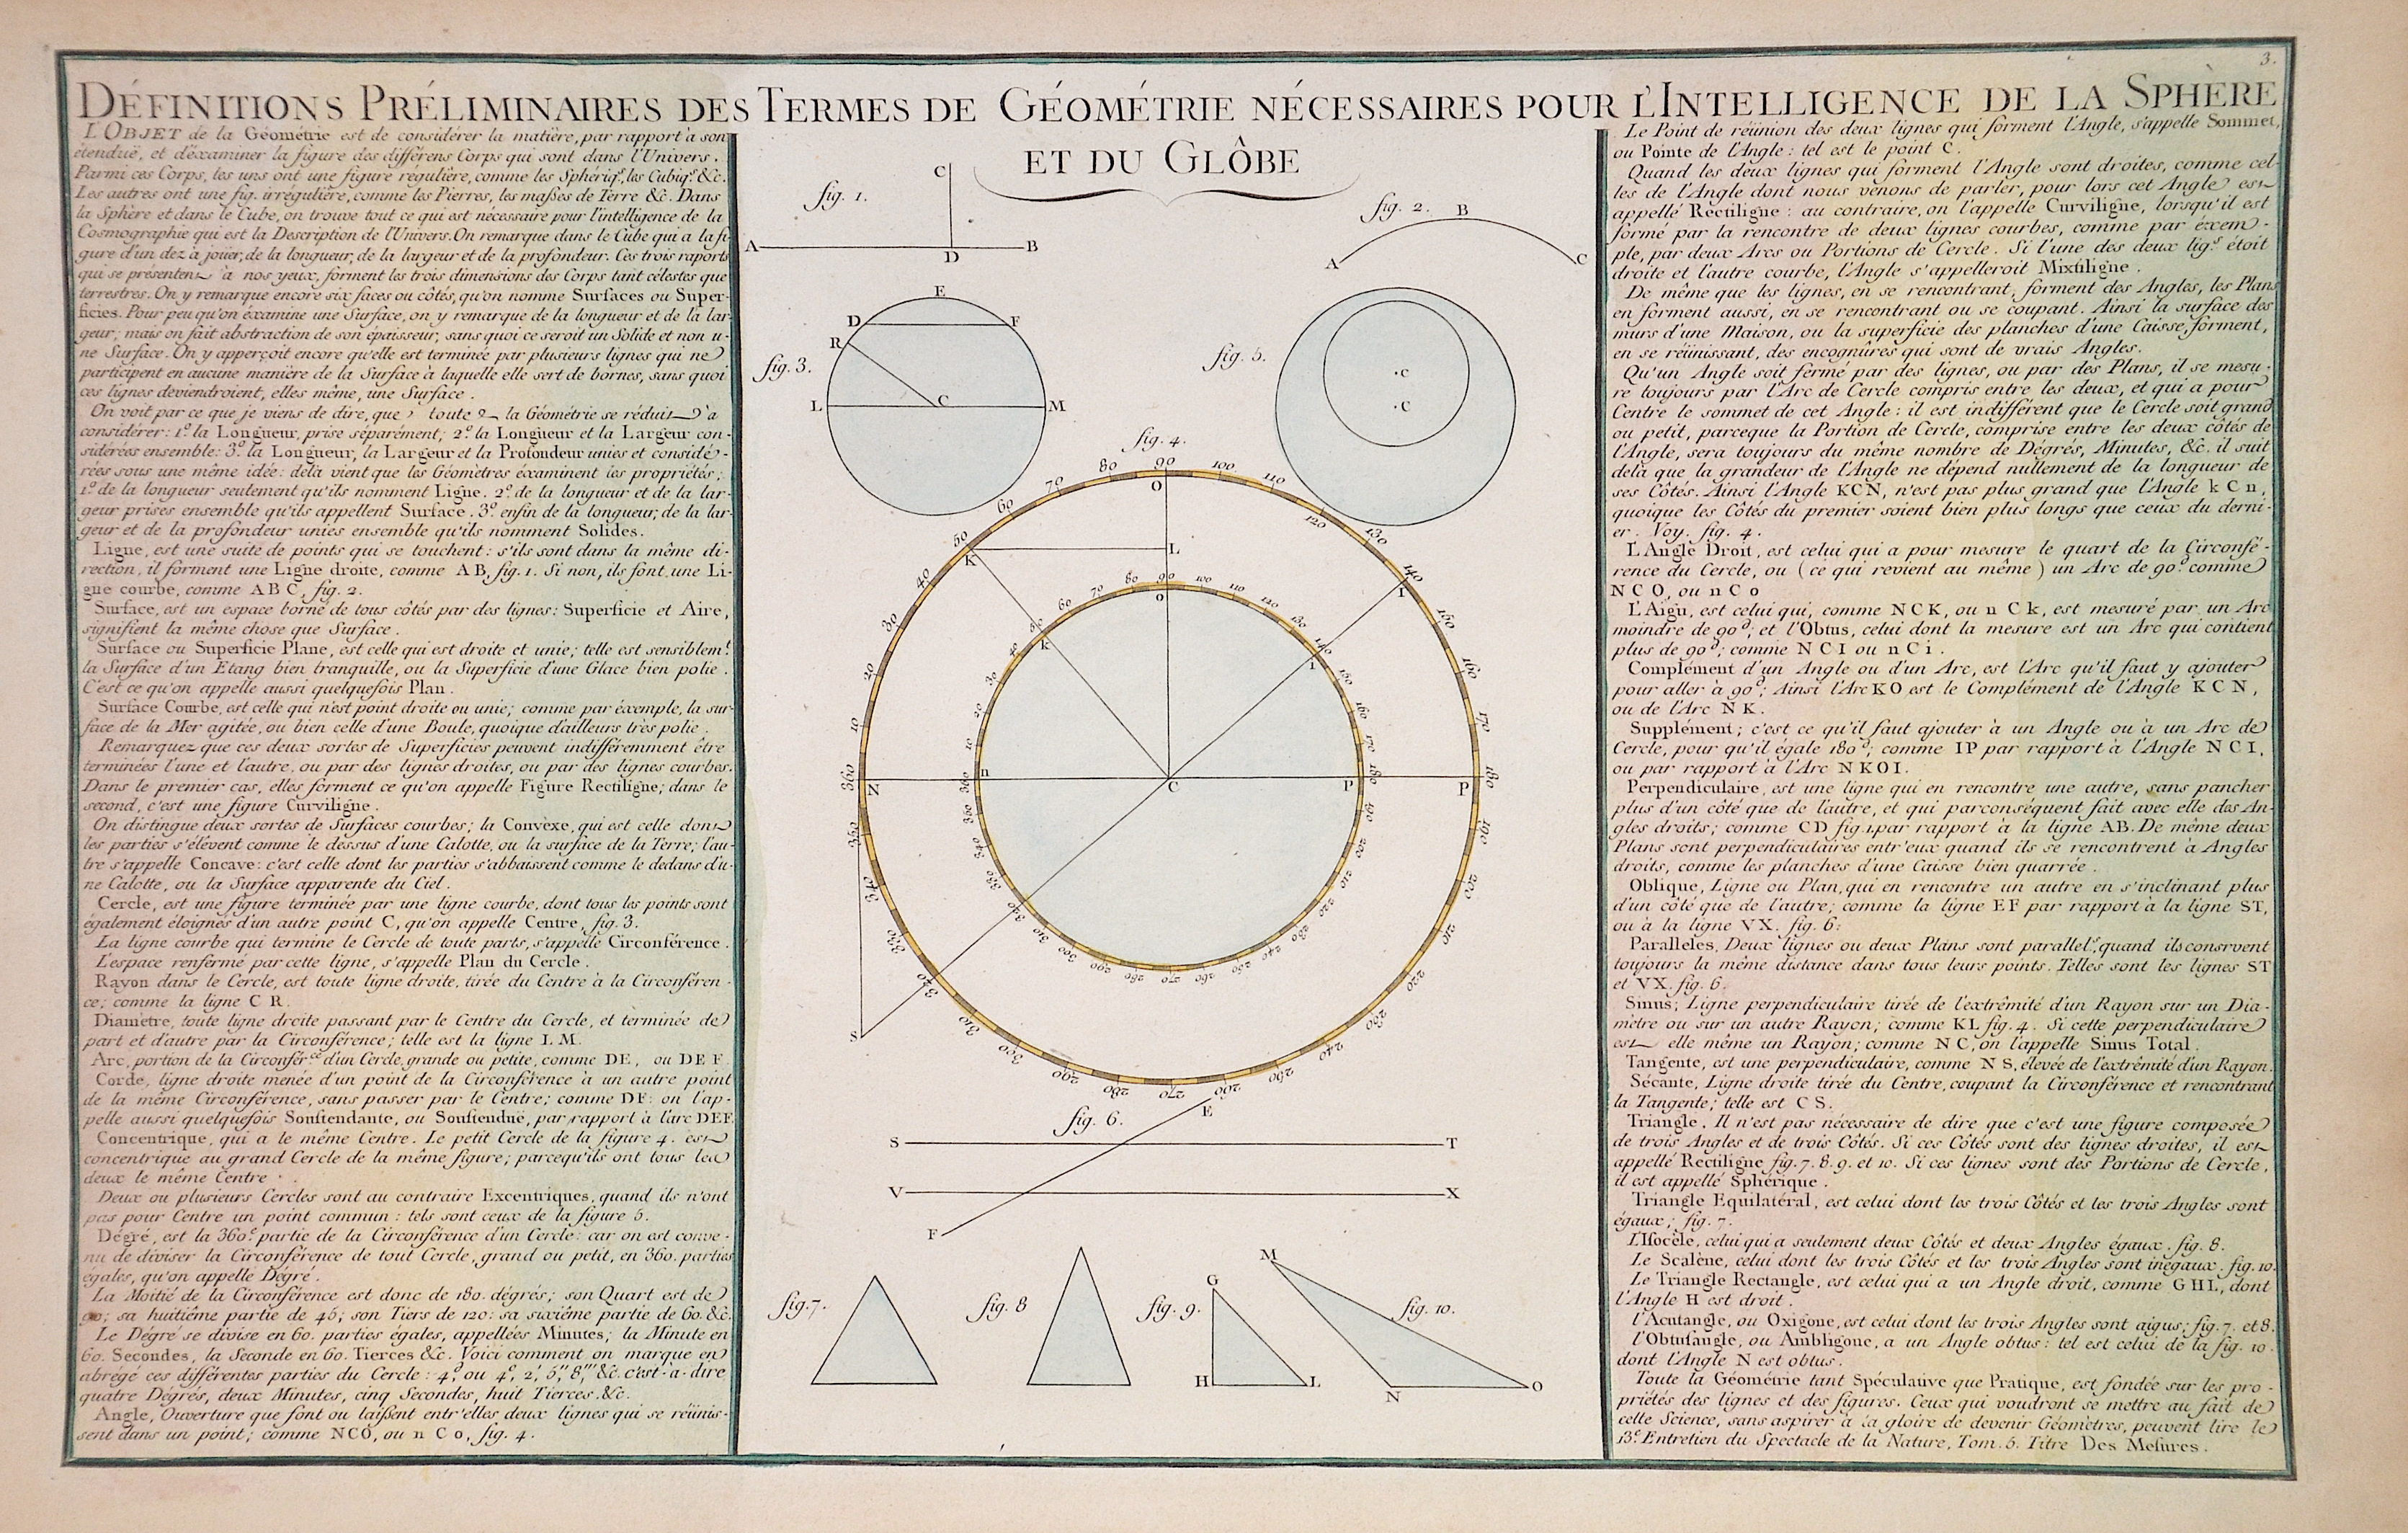 Desnos  Definitions Preliminaires des Termes de Geometrie necessaires pour l’Intelligence de la Sphere et du Globe